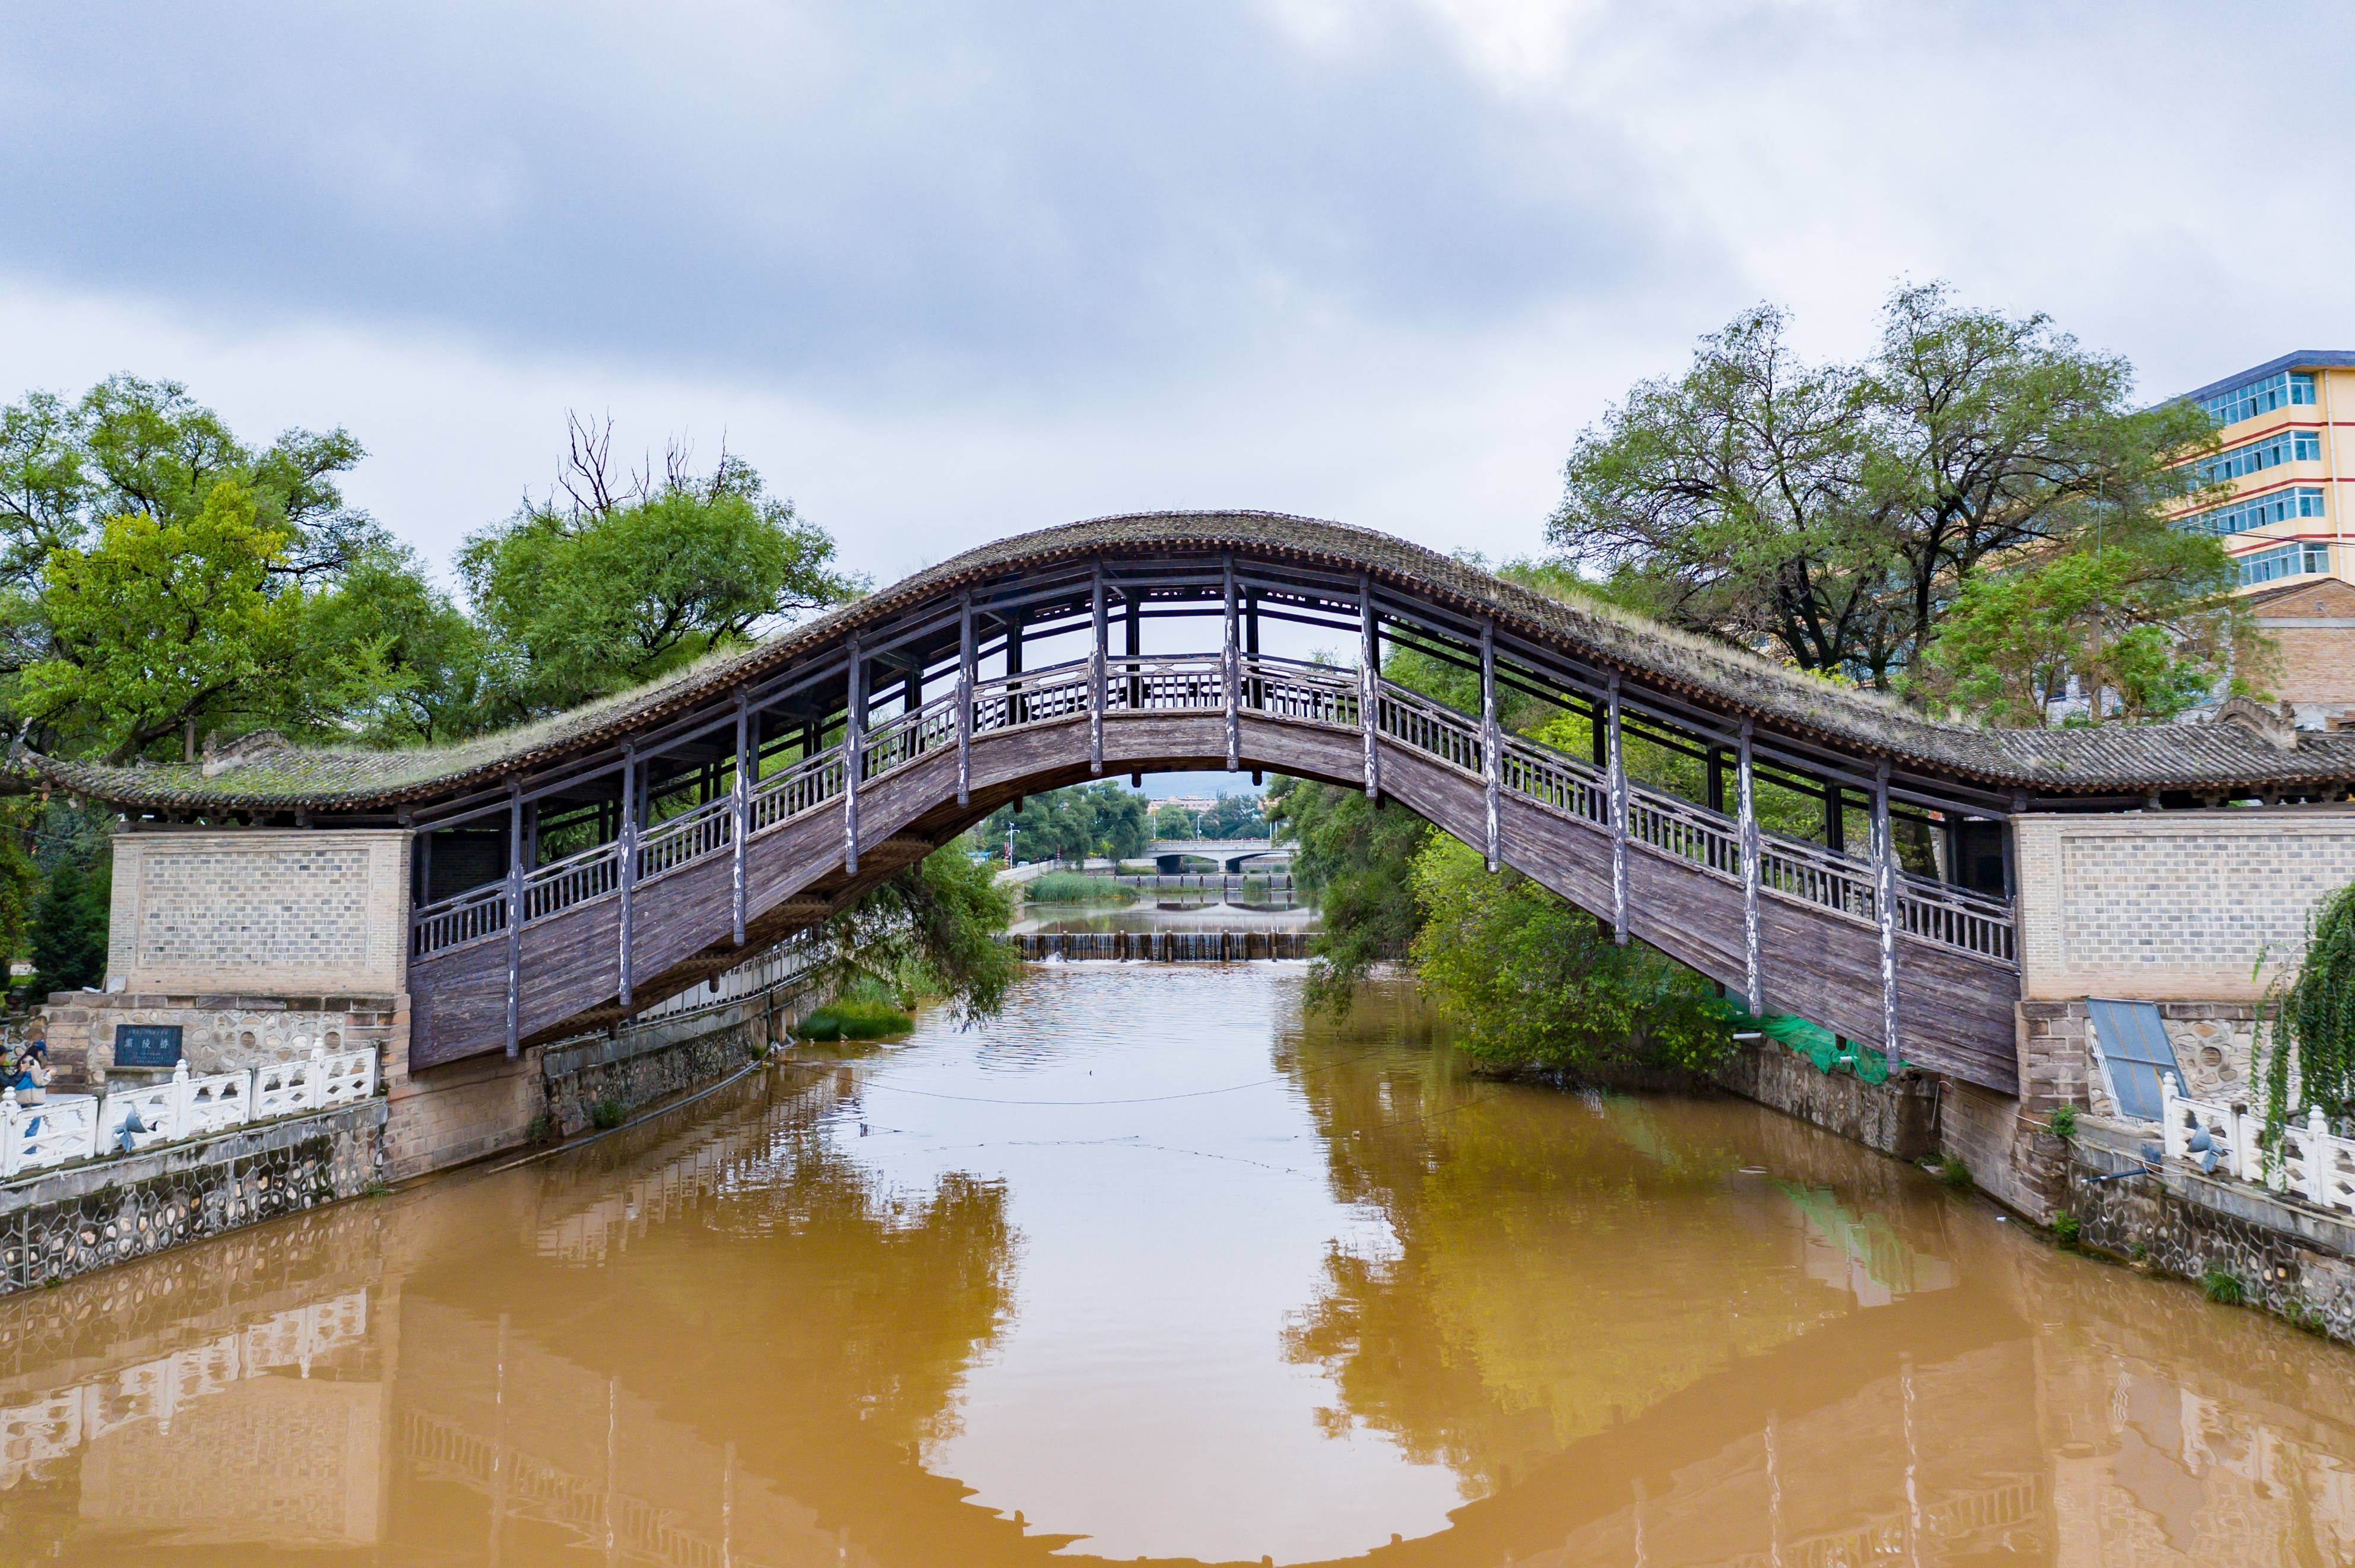 灞陵桥原先是一座始建于明洪武初年的平桥,因渭水绕长安,绕灞陵,为